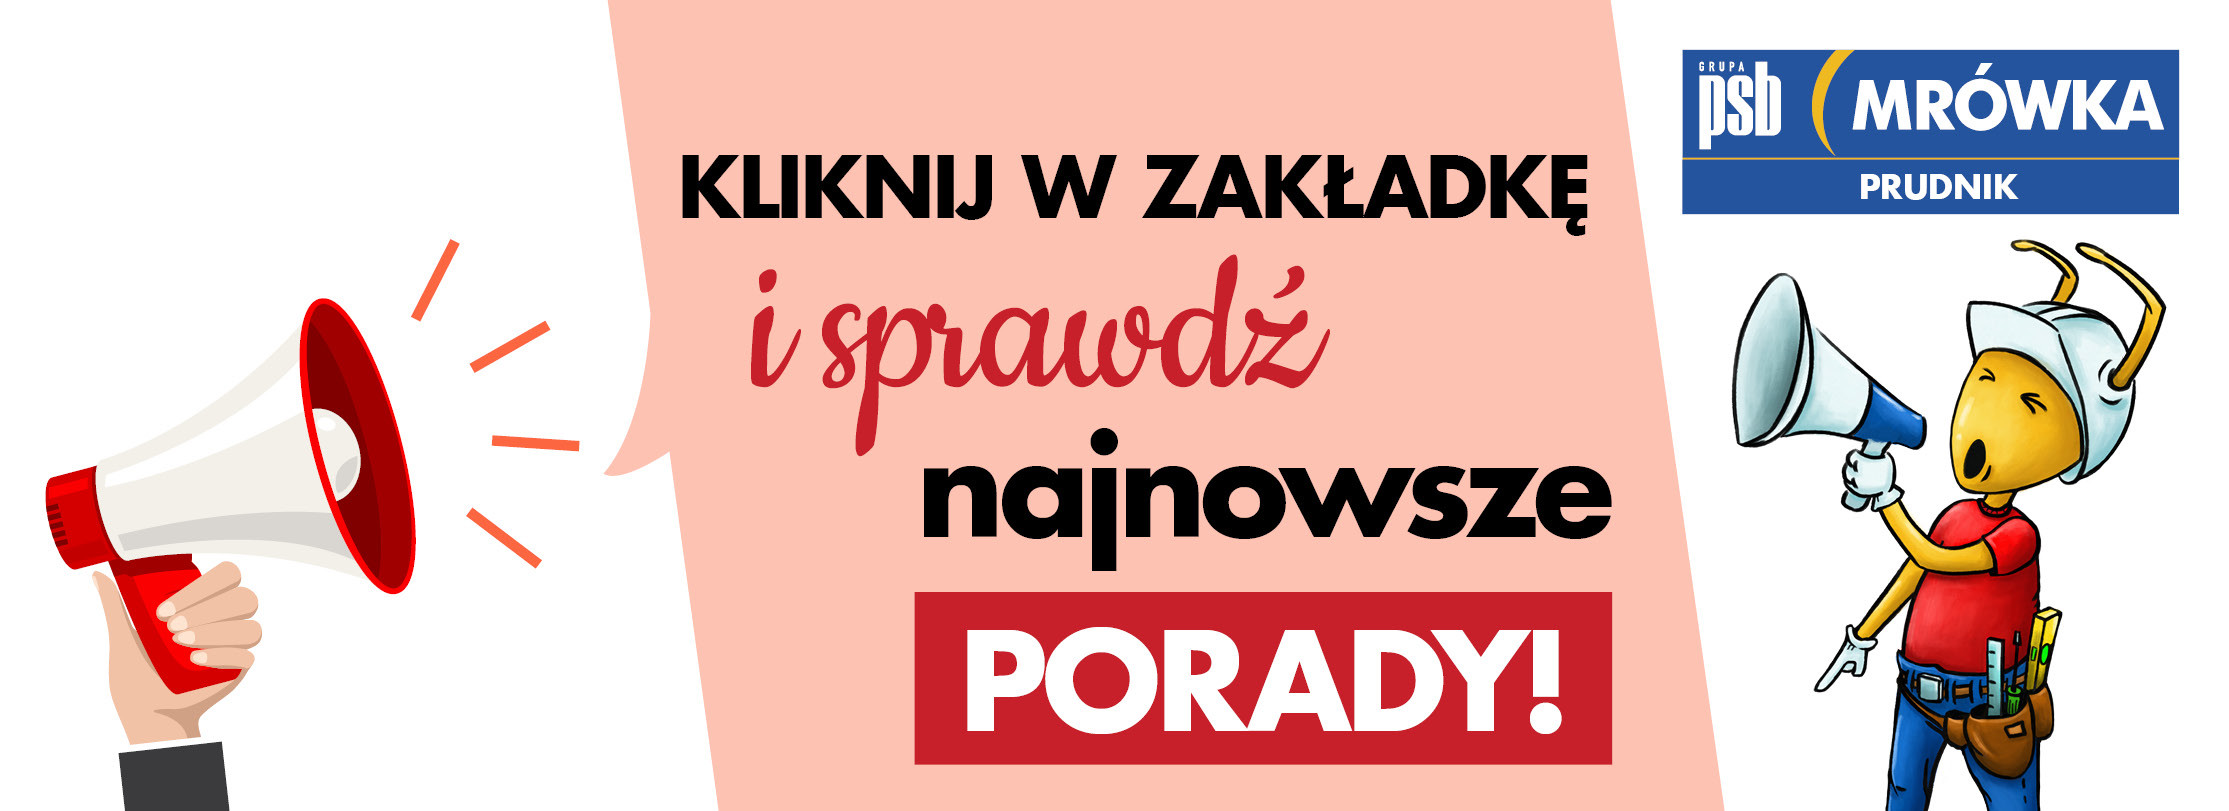 Grupa PSB mrowka Mrówka Prudnik